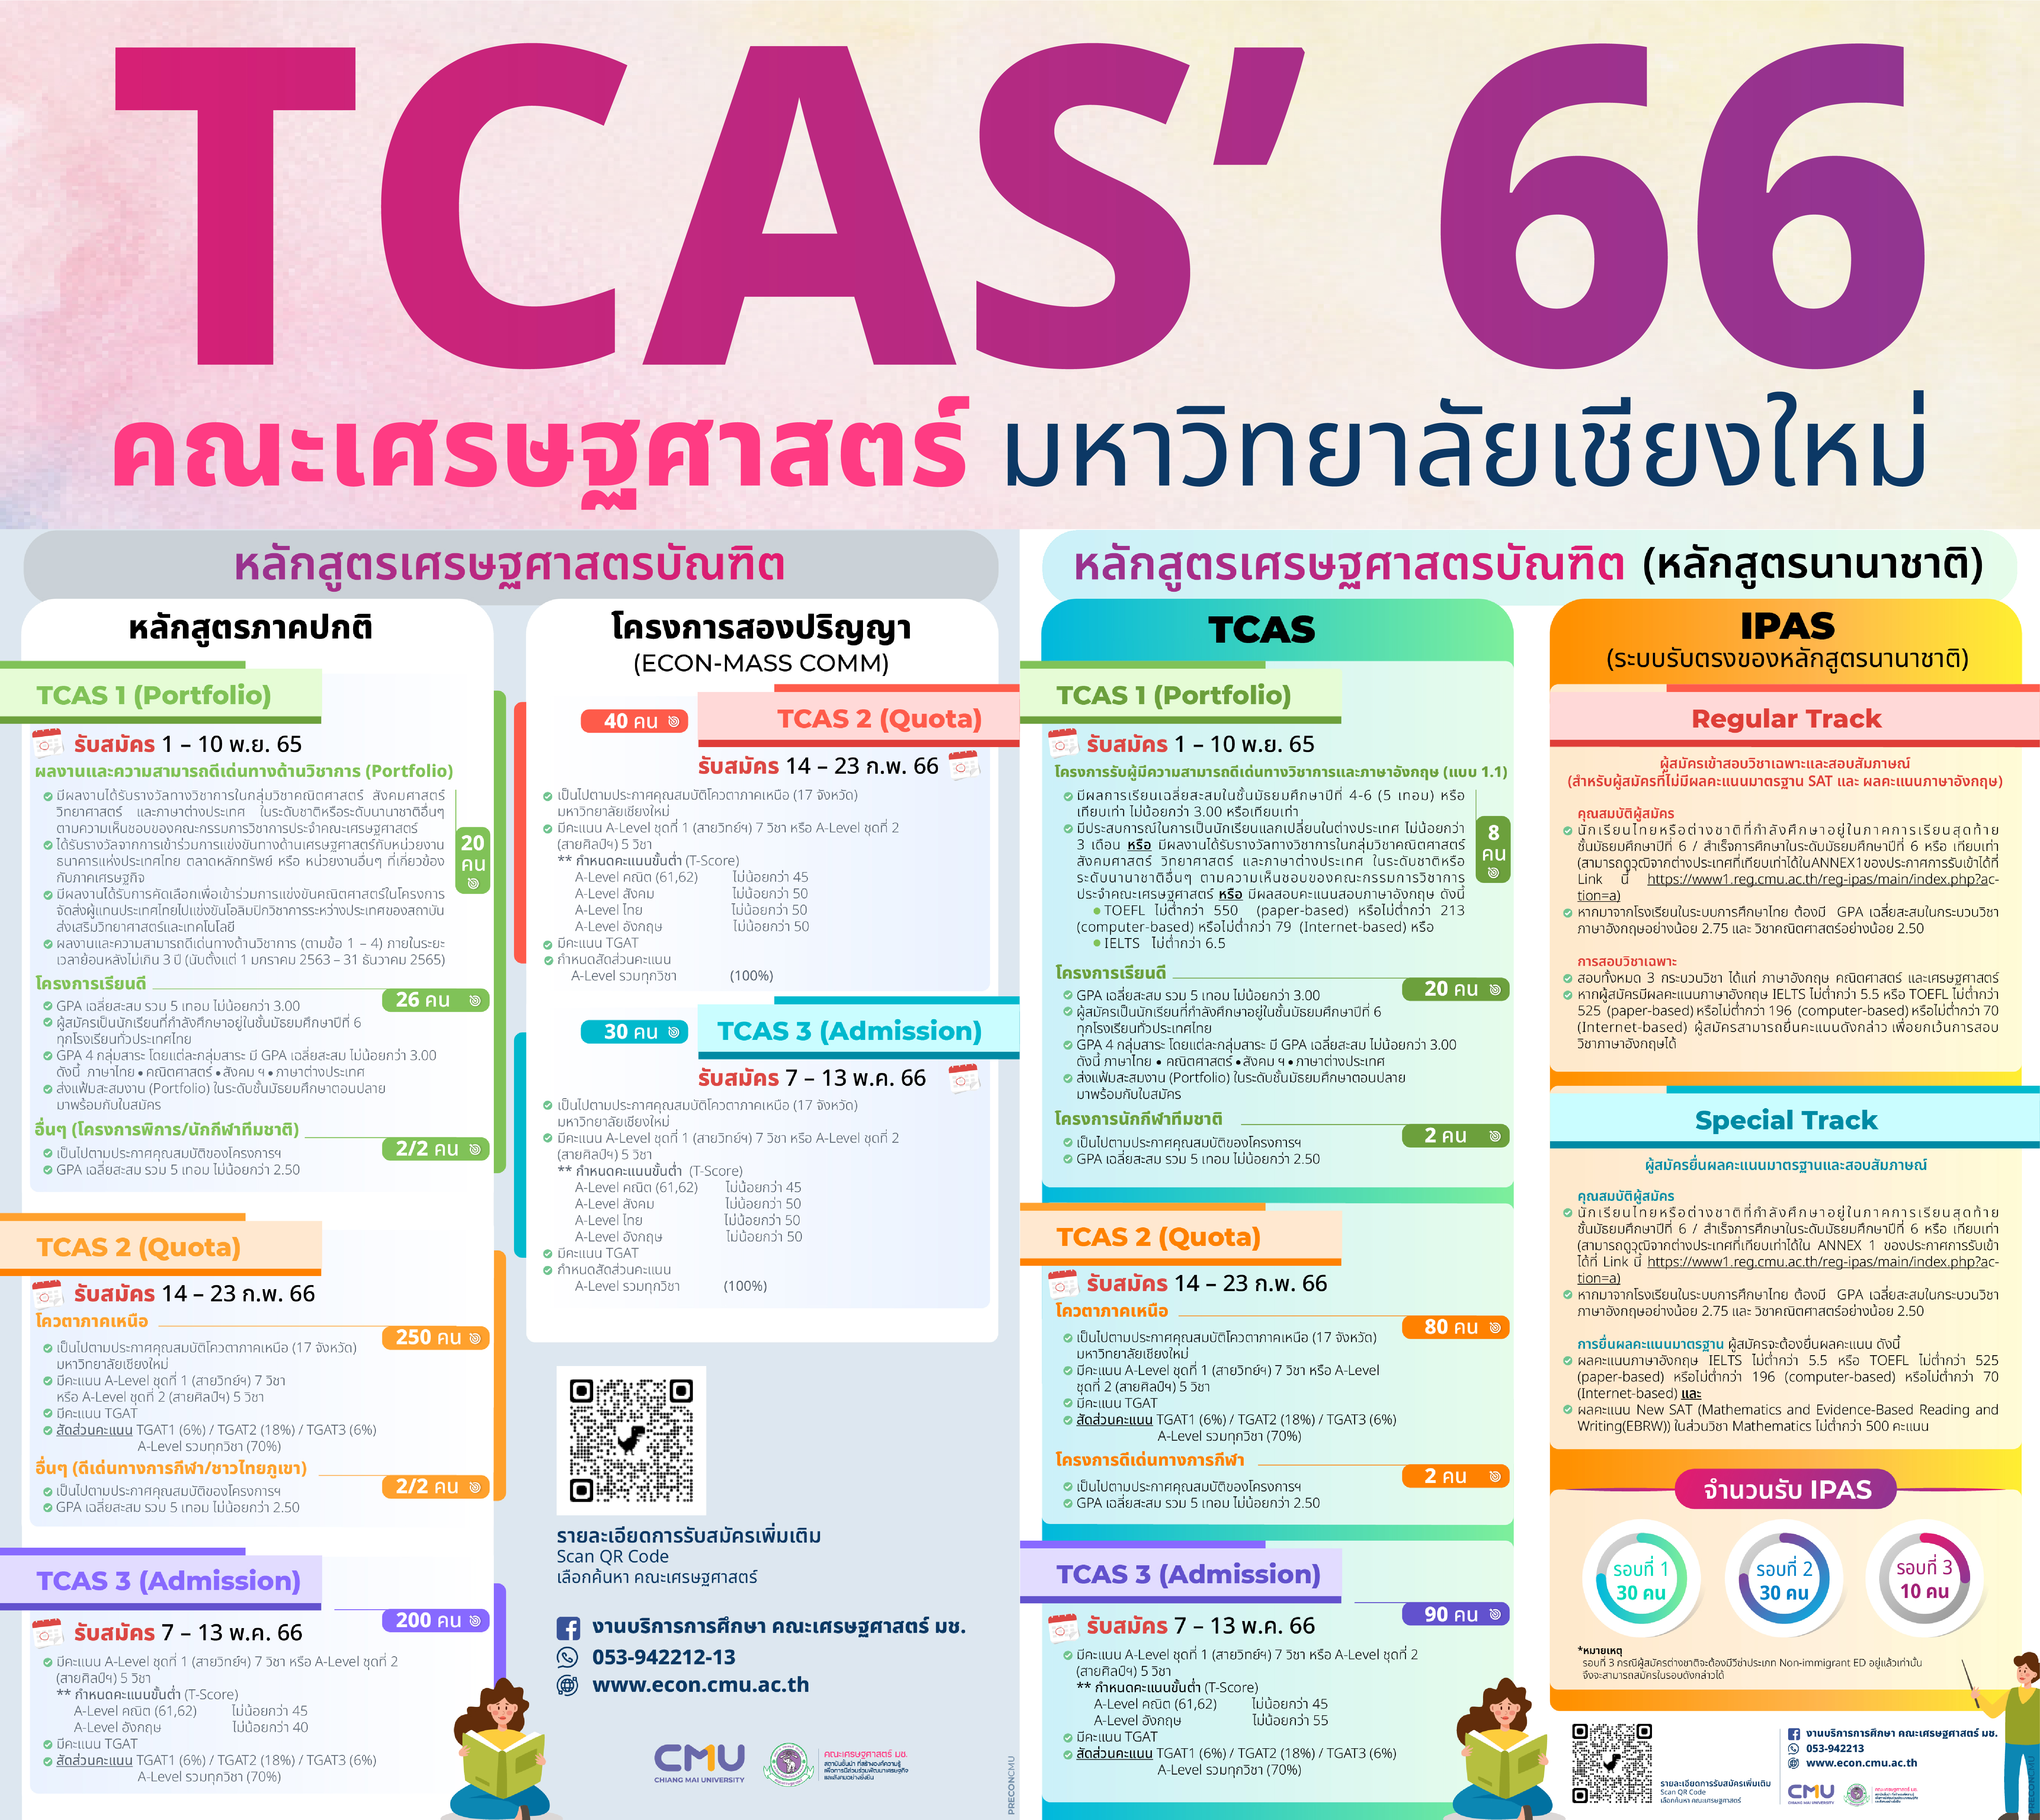 TCAS 66